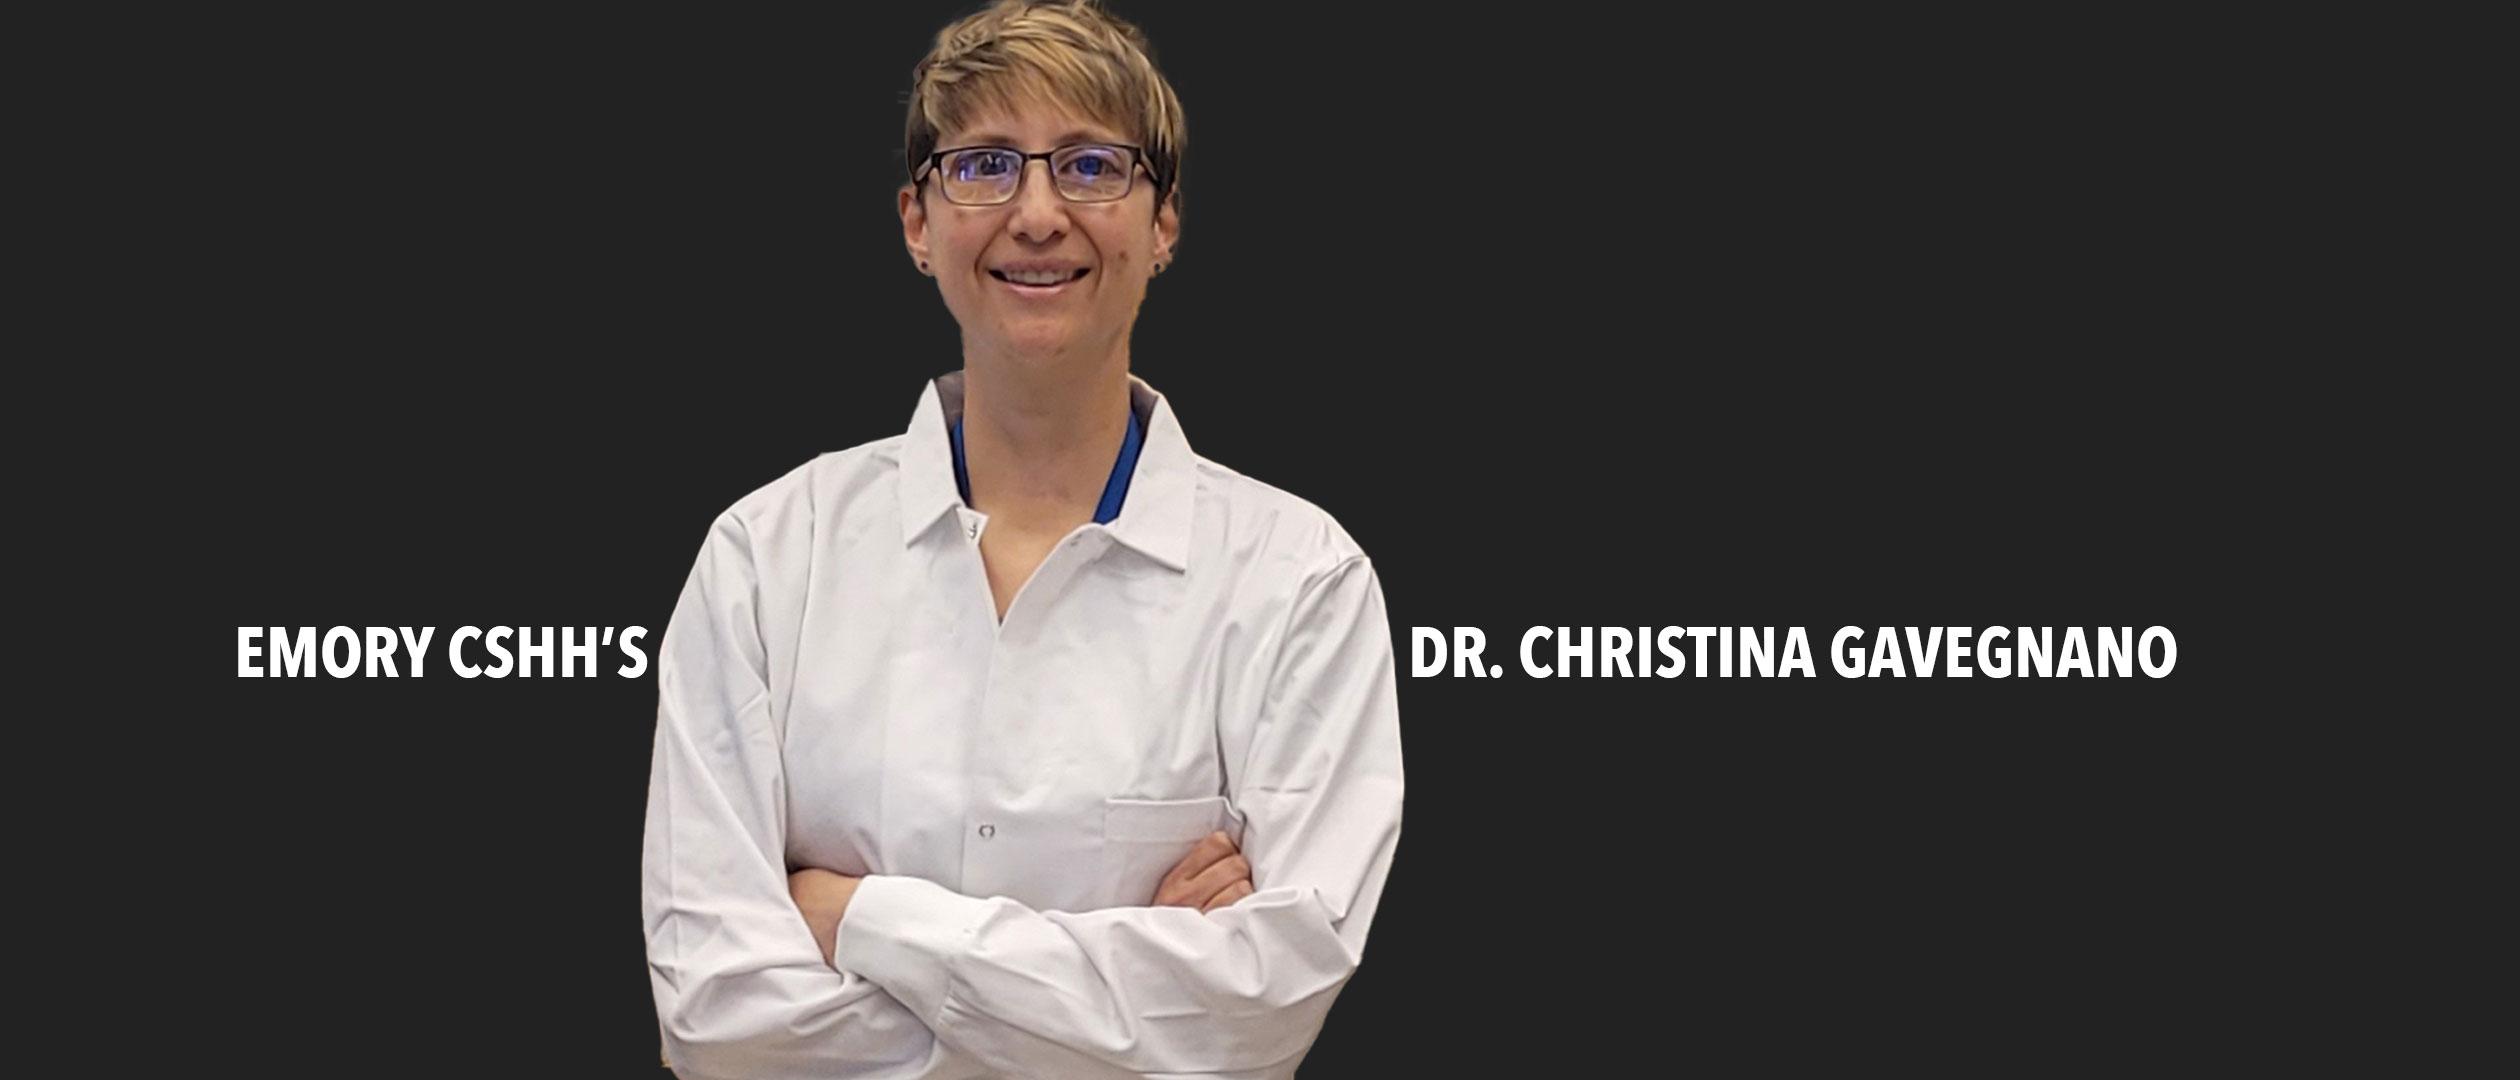 Emory CSHH's Dr. Christina Gavegnano